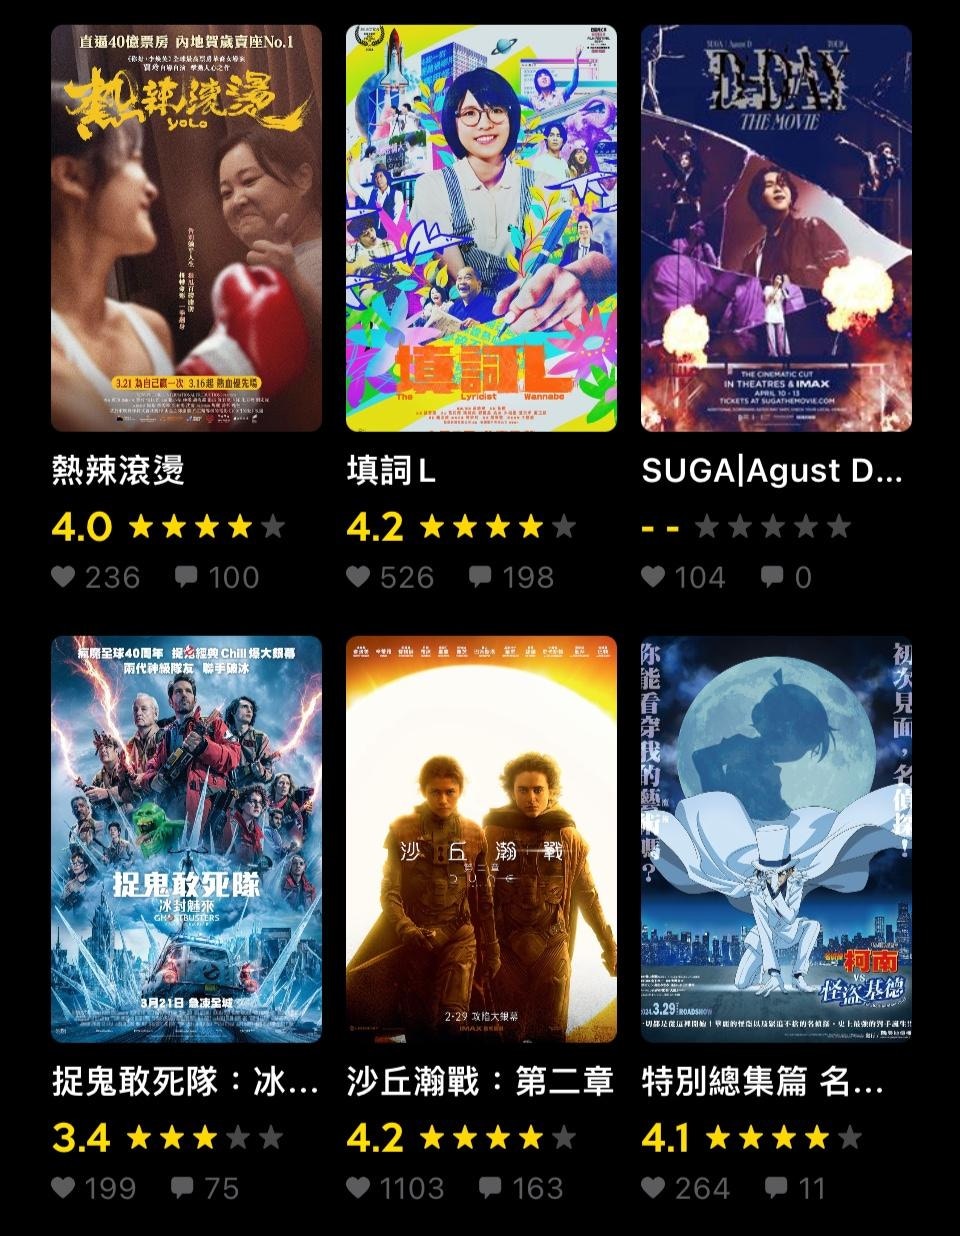 现正上映及预售中的电影，预计部分在「全港戏院日」仍在上映，供观众选择。（HK Movie网页）